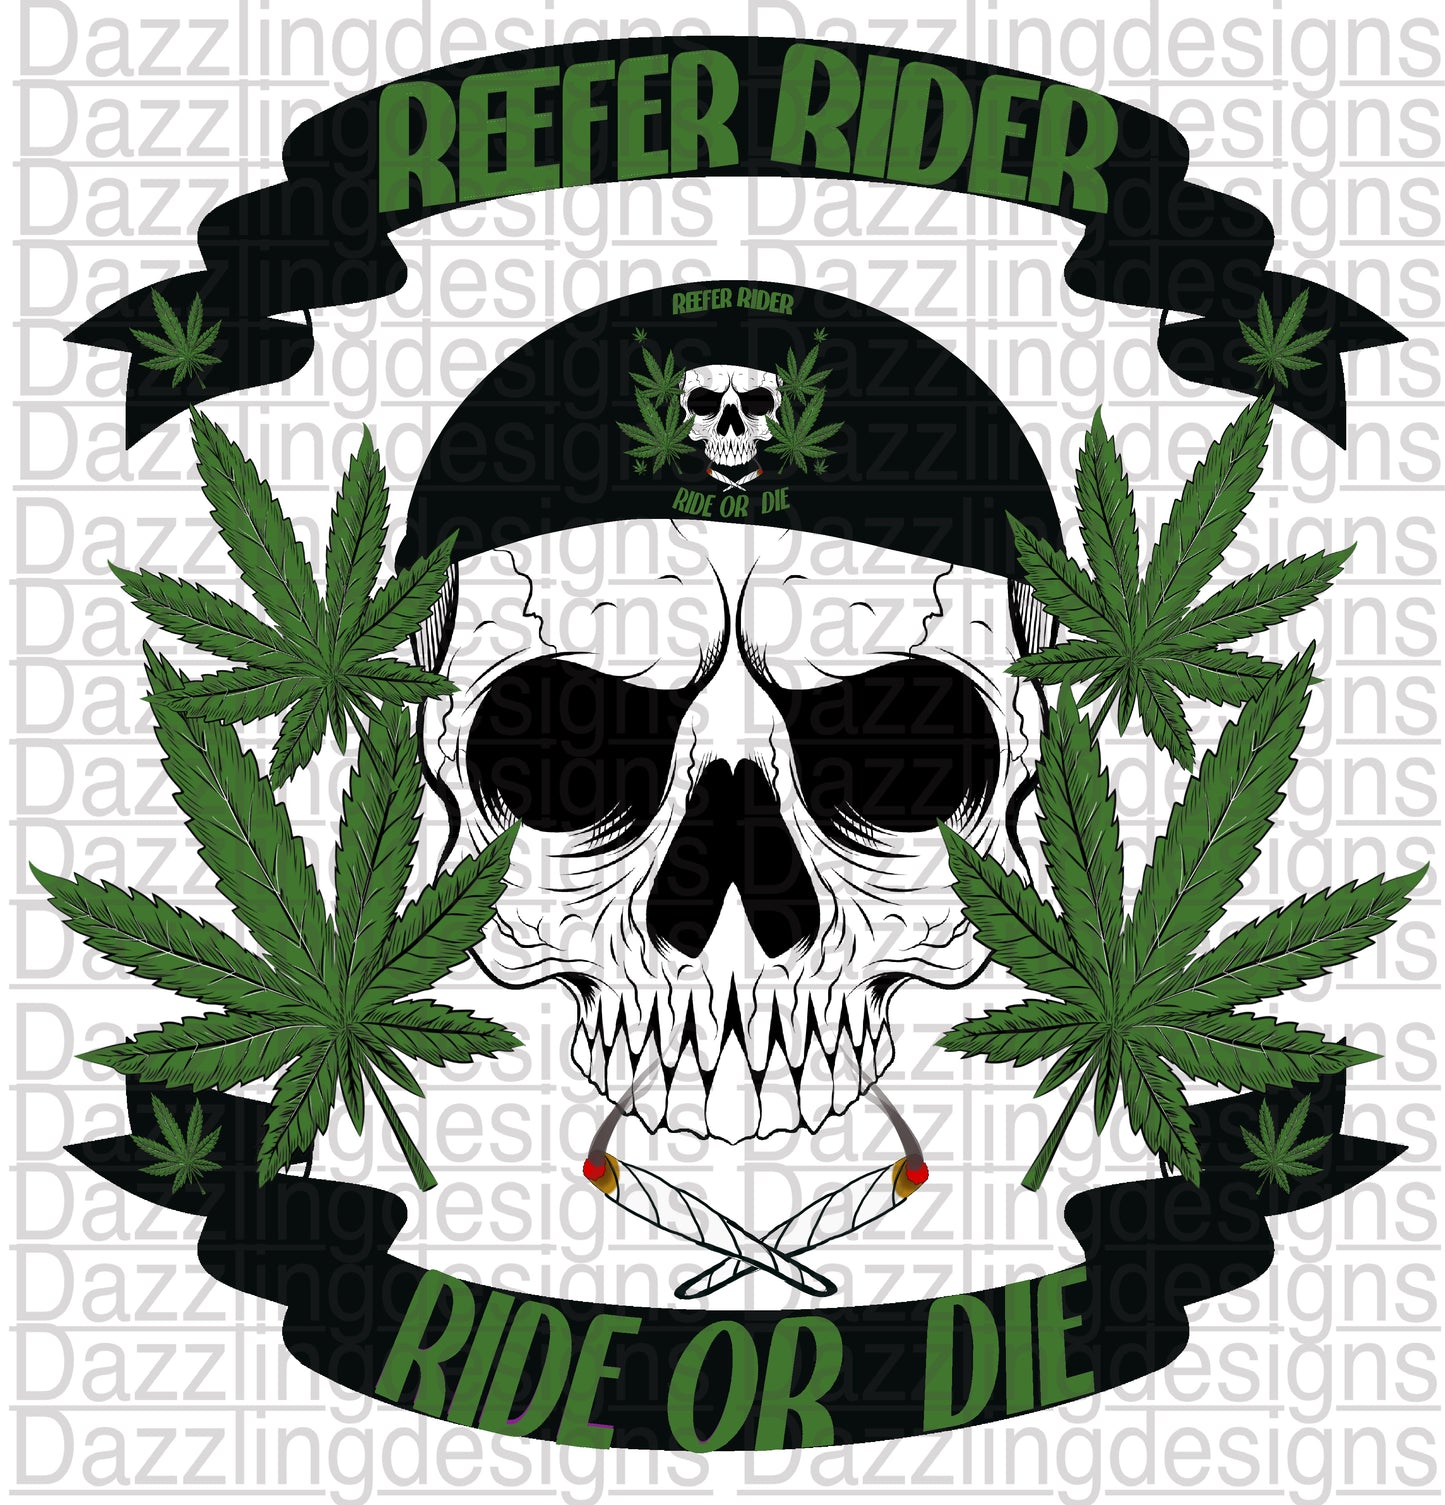 Reefer Rider Ride or Die Skull